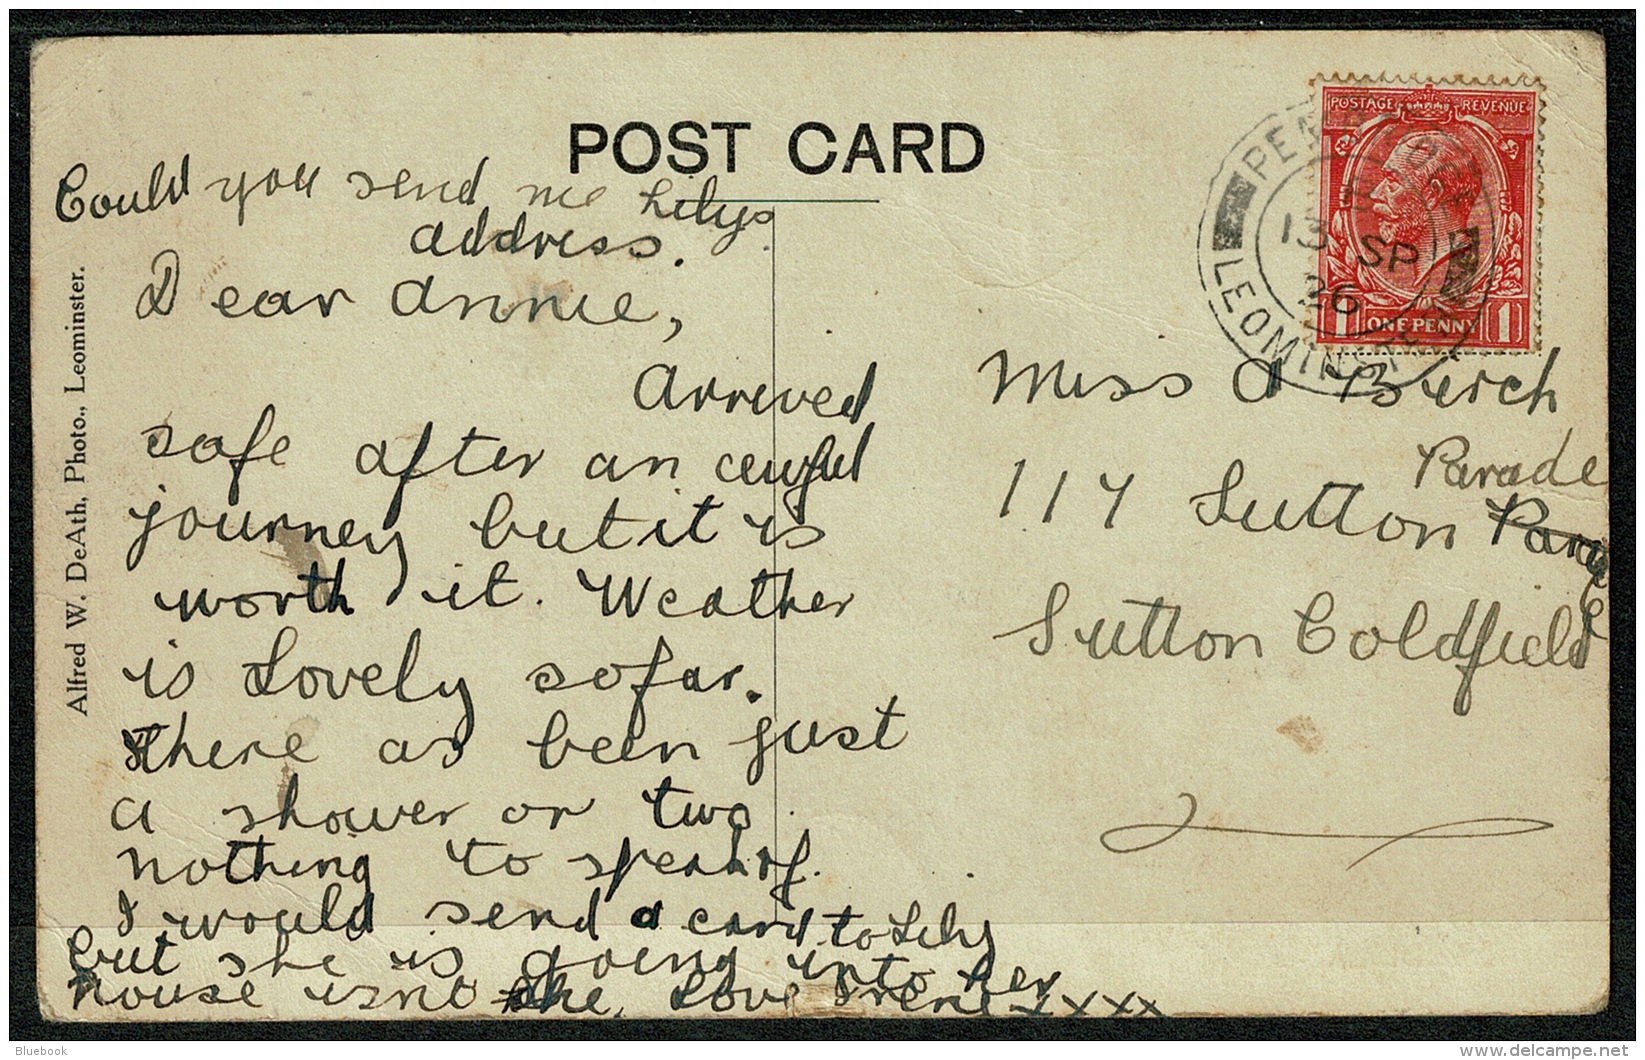 RB 1194 - 1926 Postcard - Eardisland Near Leominster Herefordshire - Pembridge Postmark - Herefordshire